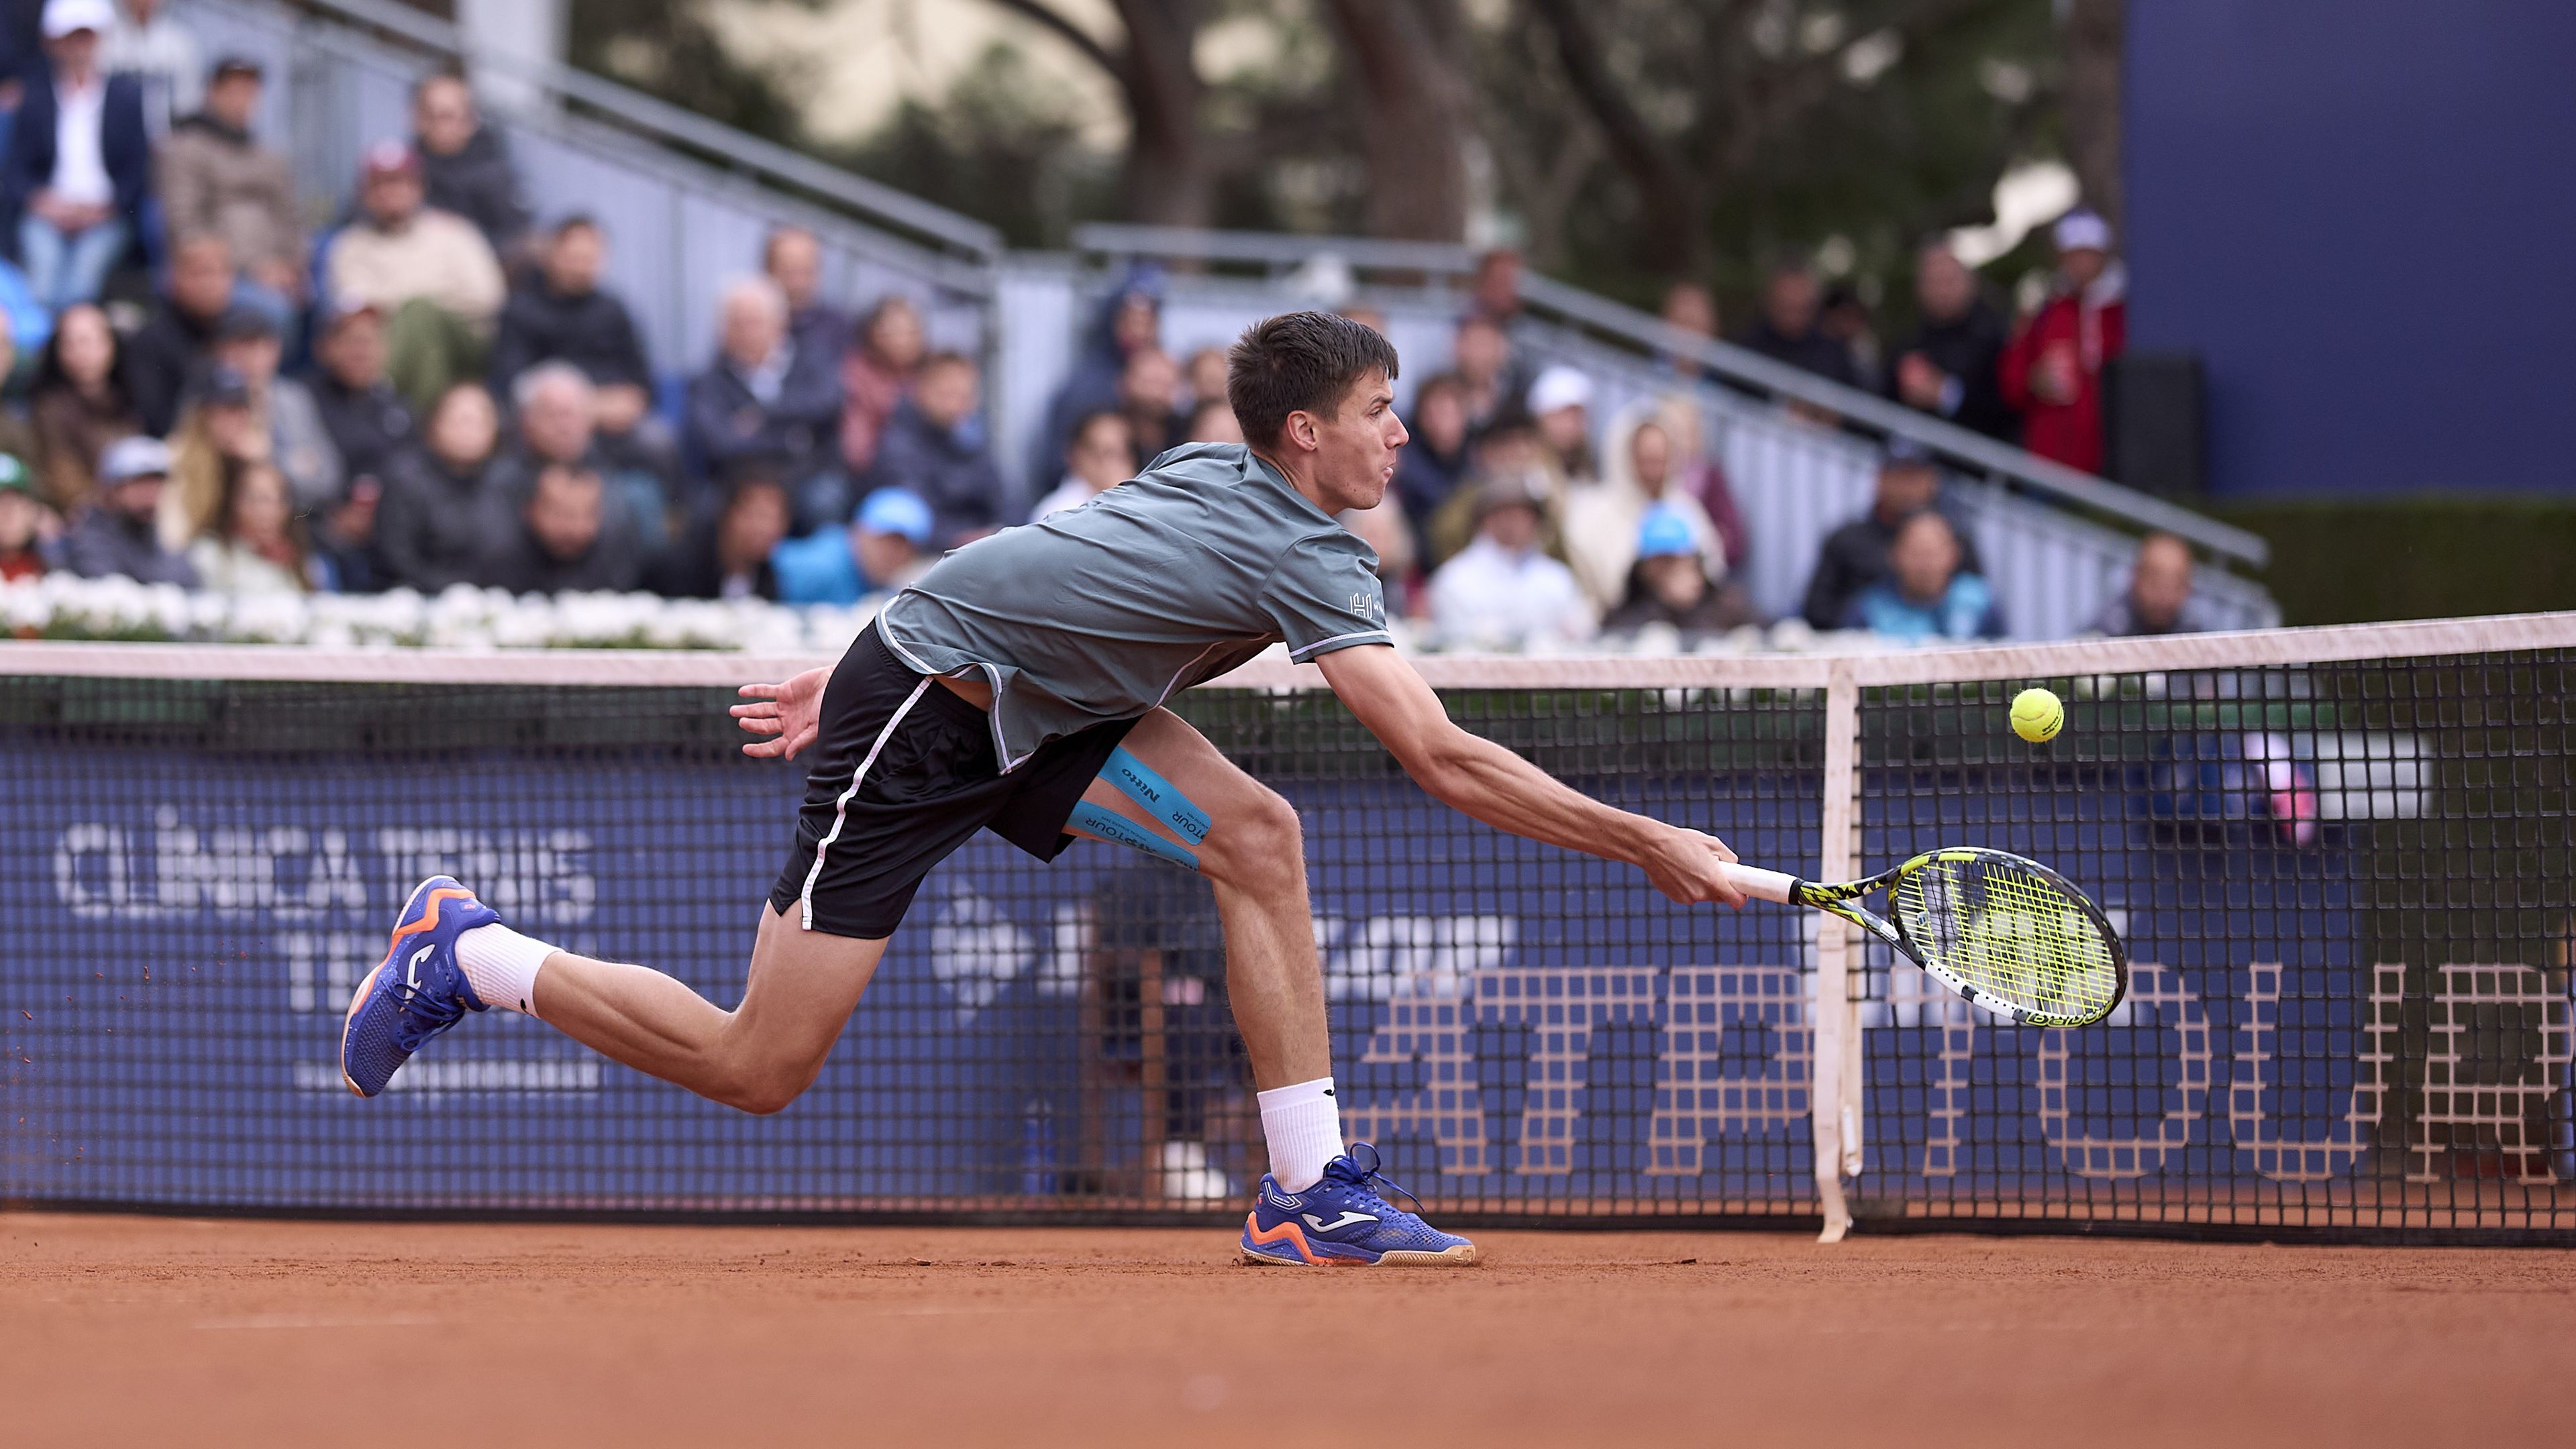 Két rövidítéses szettben, de a világranglistán 37. helyen álló Marozsán Fábián továbbjutott a második fordulóba a madridi tenisztornán.  (Fotó: Getty Images)